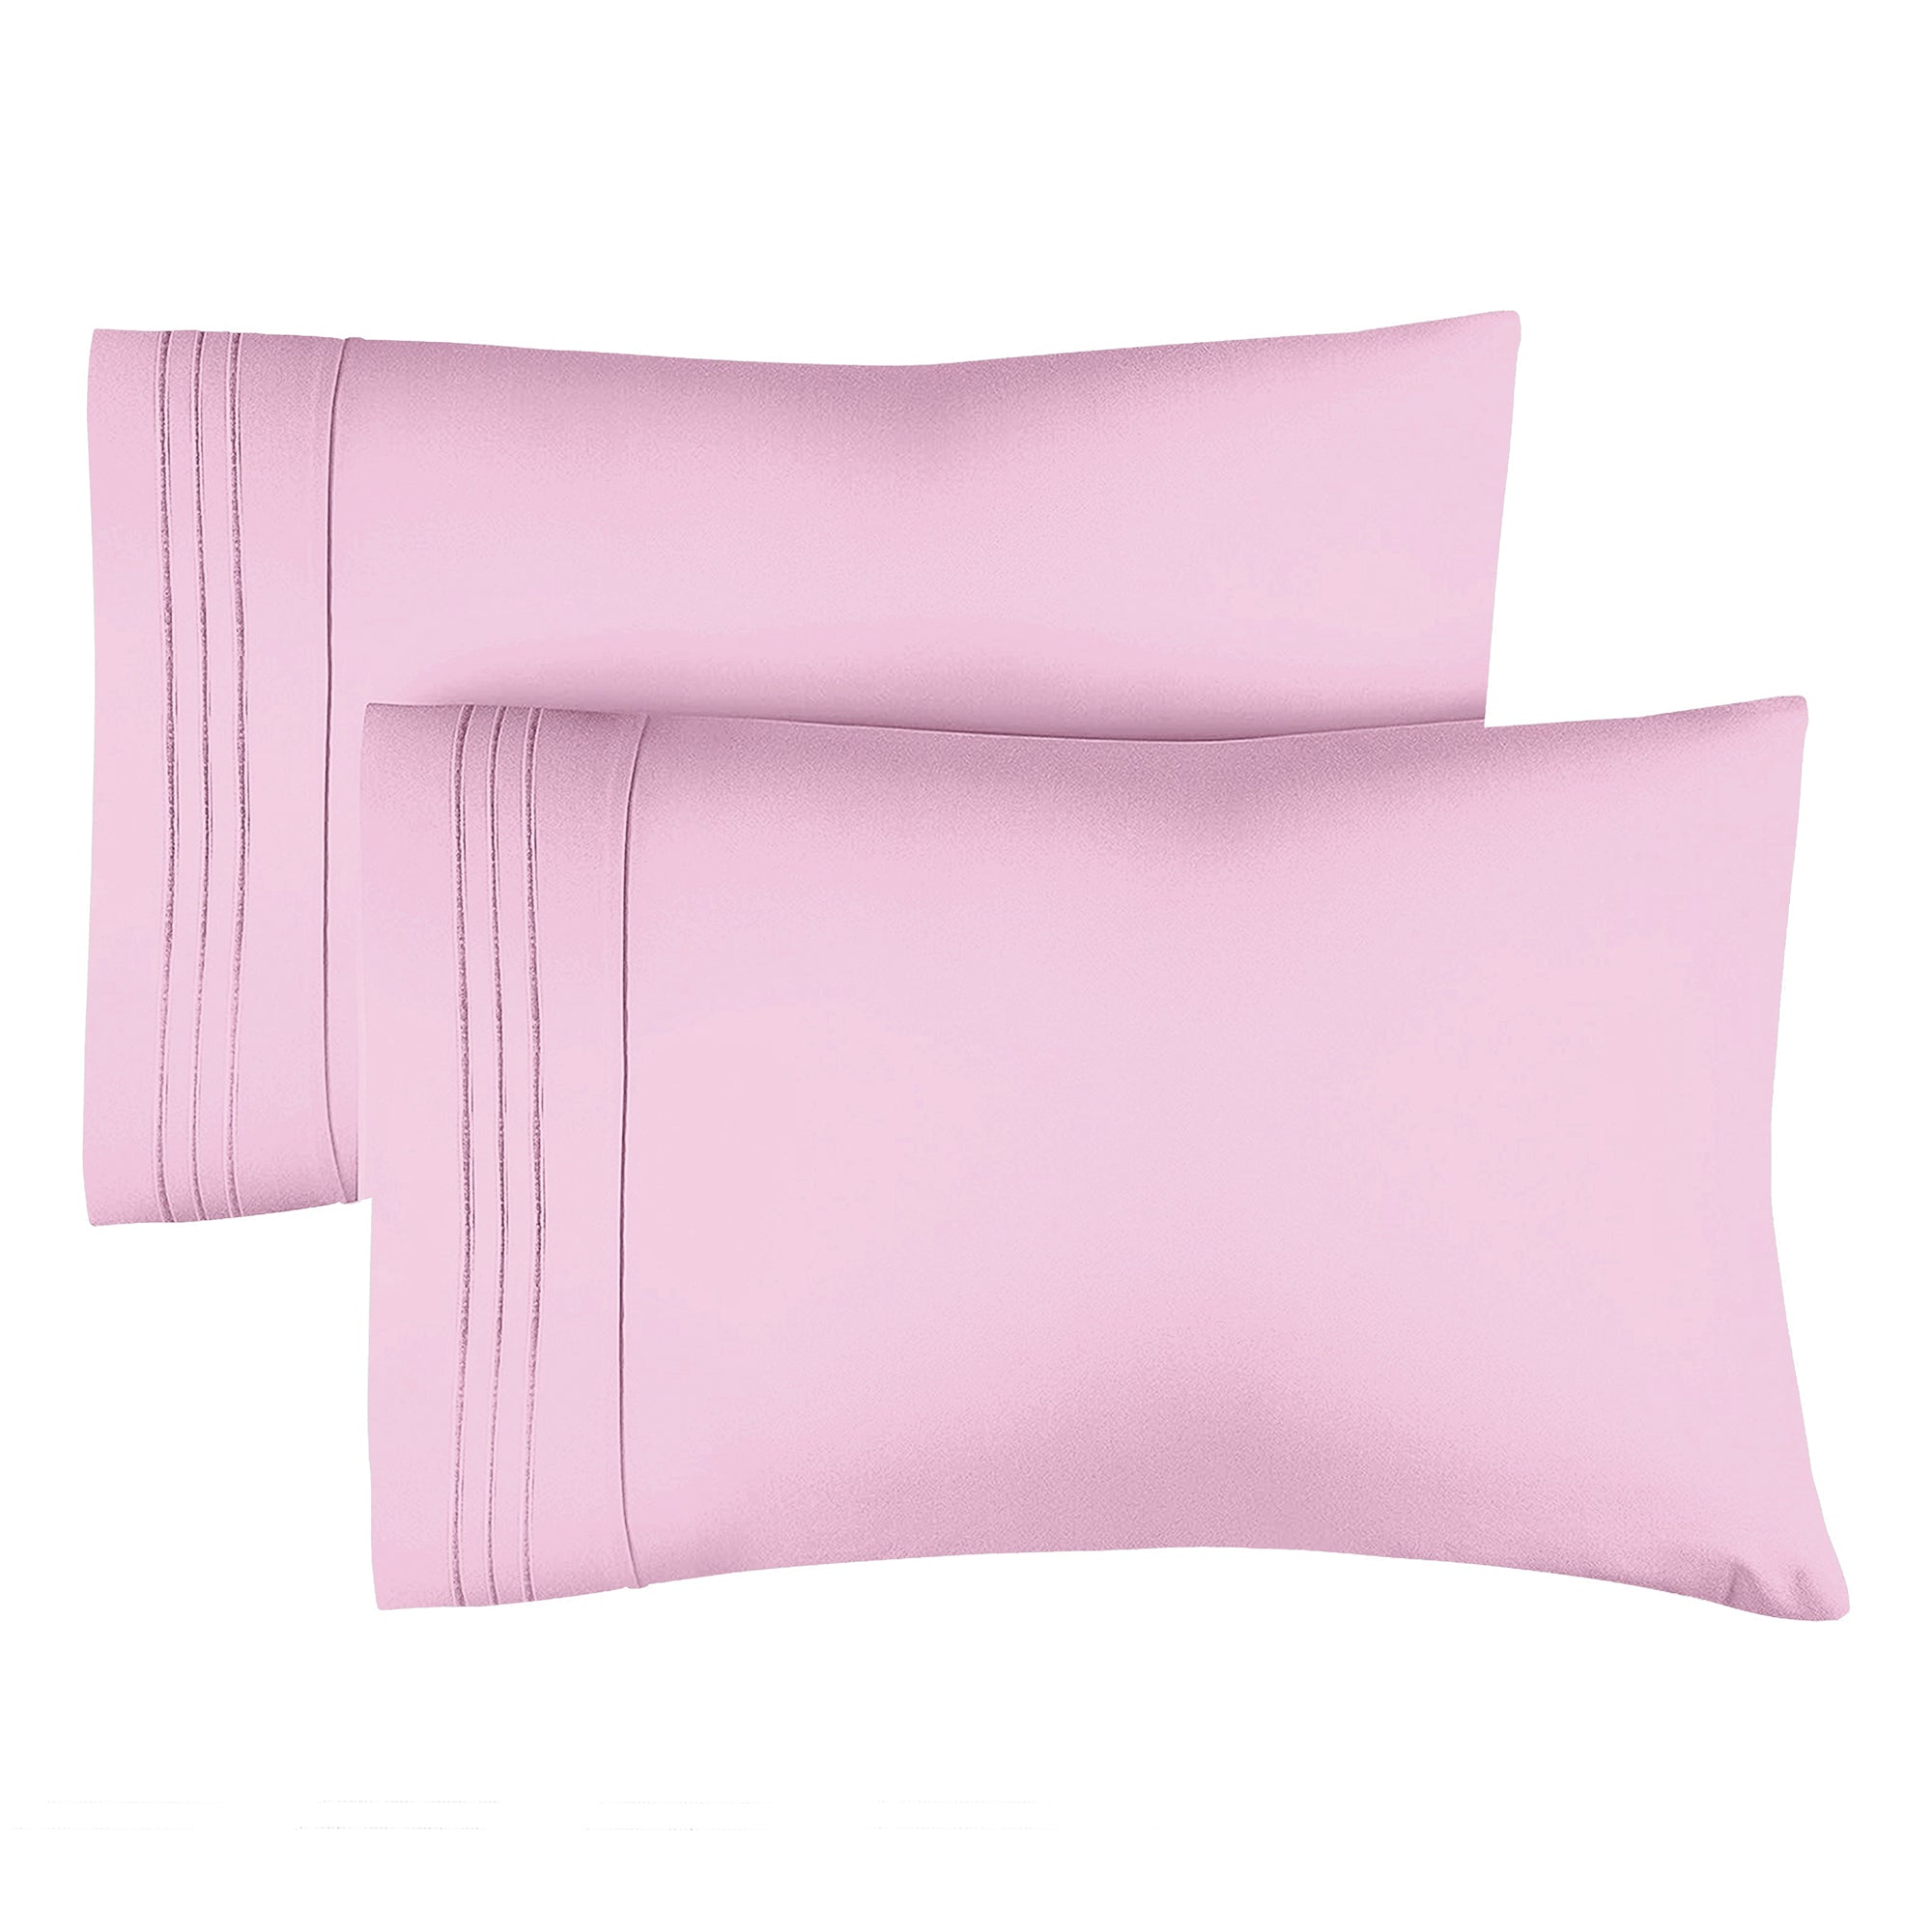 tes 2 Pillowcase Set - Light Pink